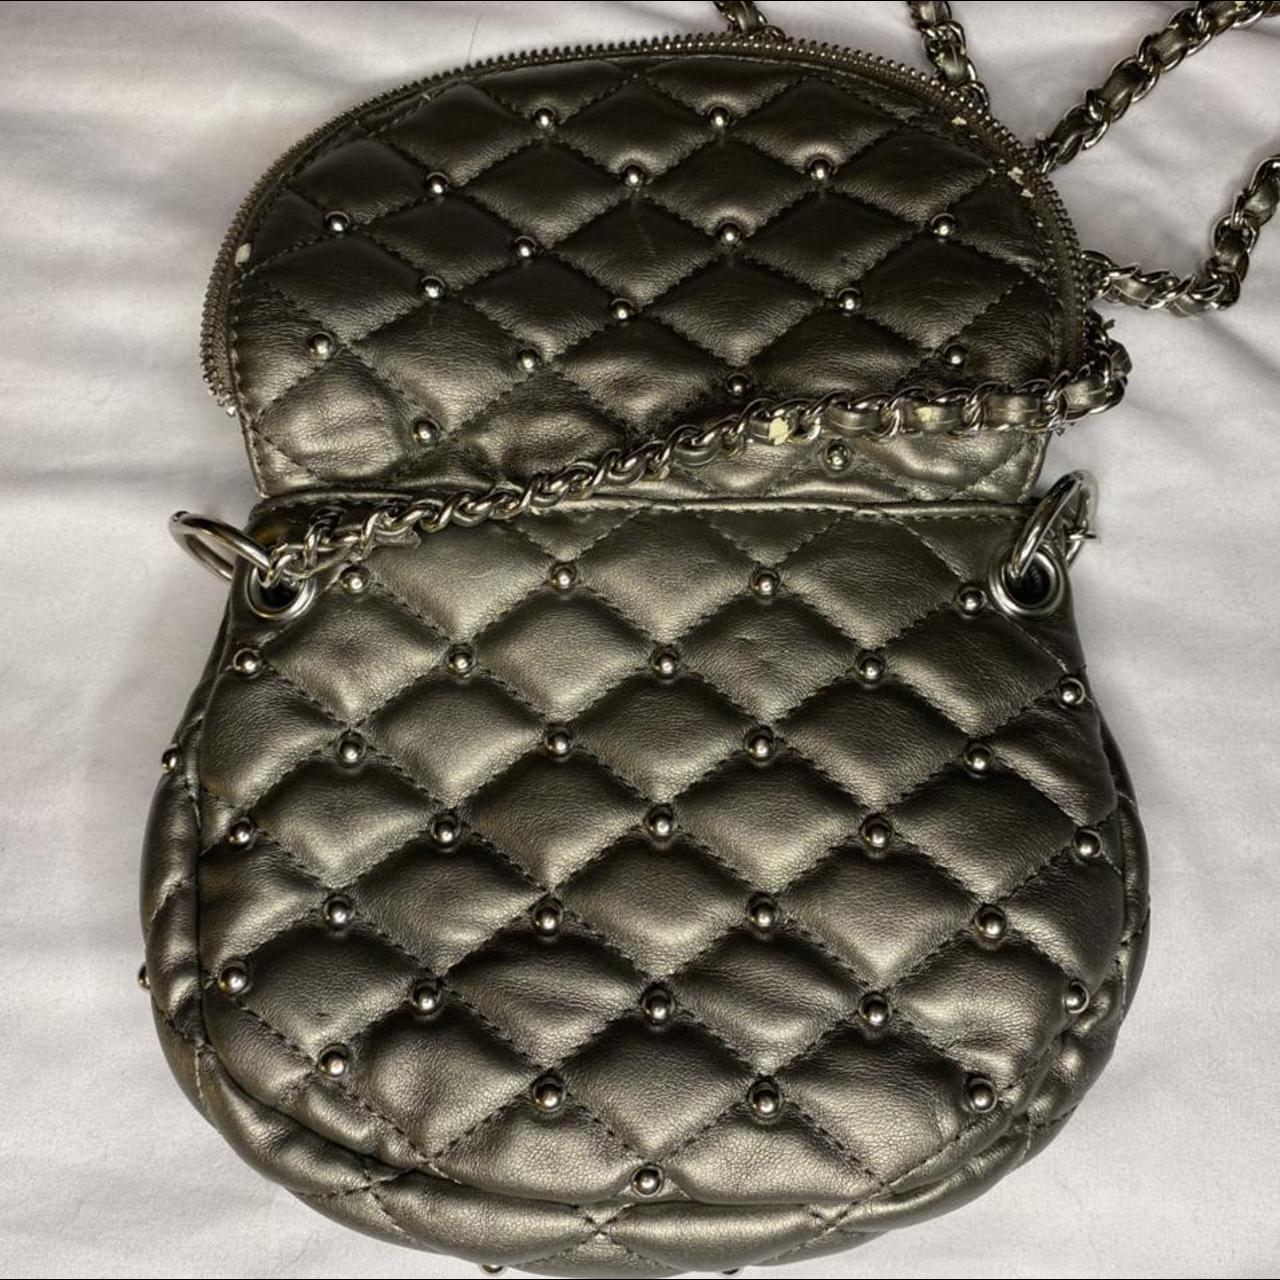 Poppie Jones Leather Handbags